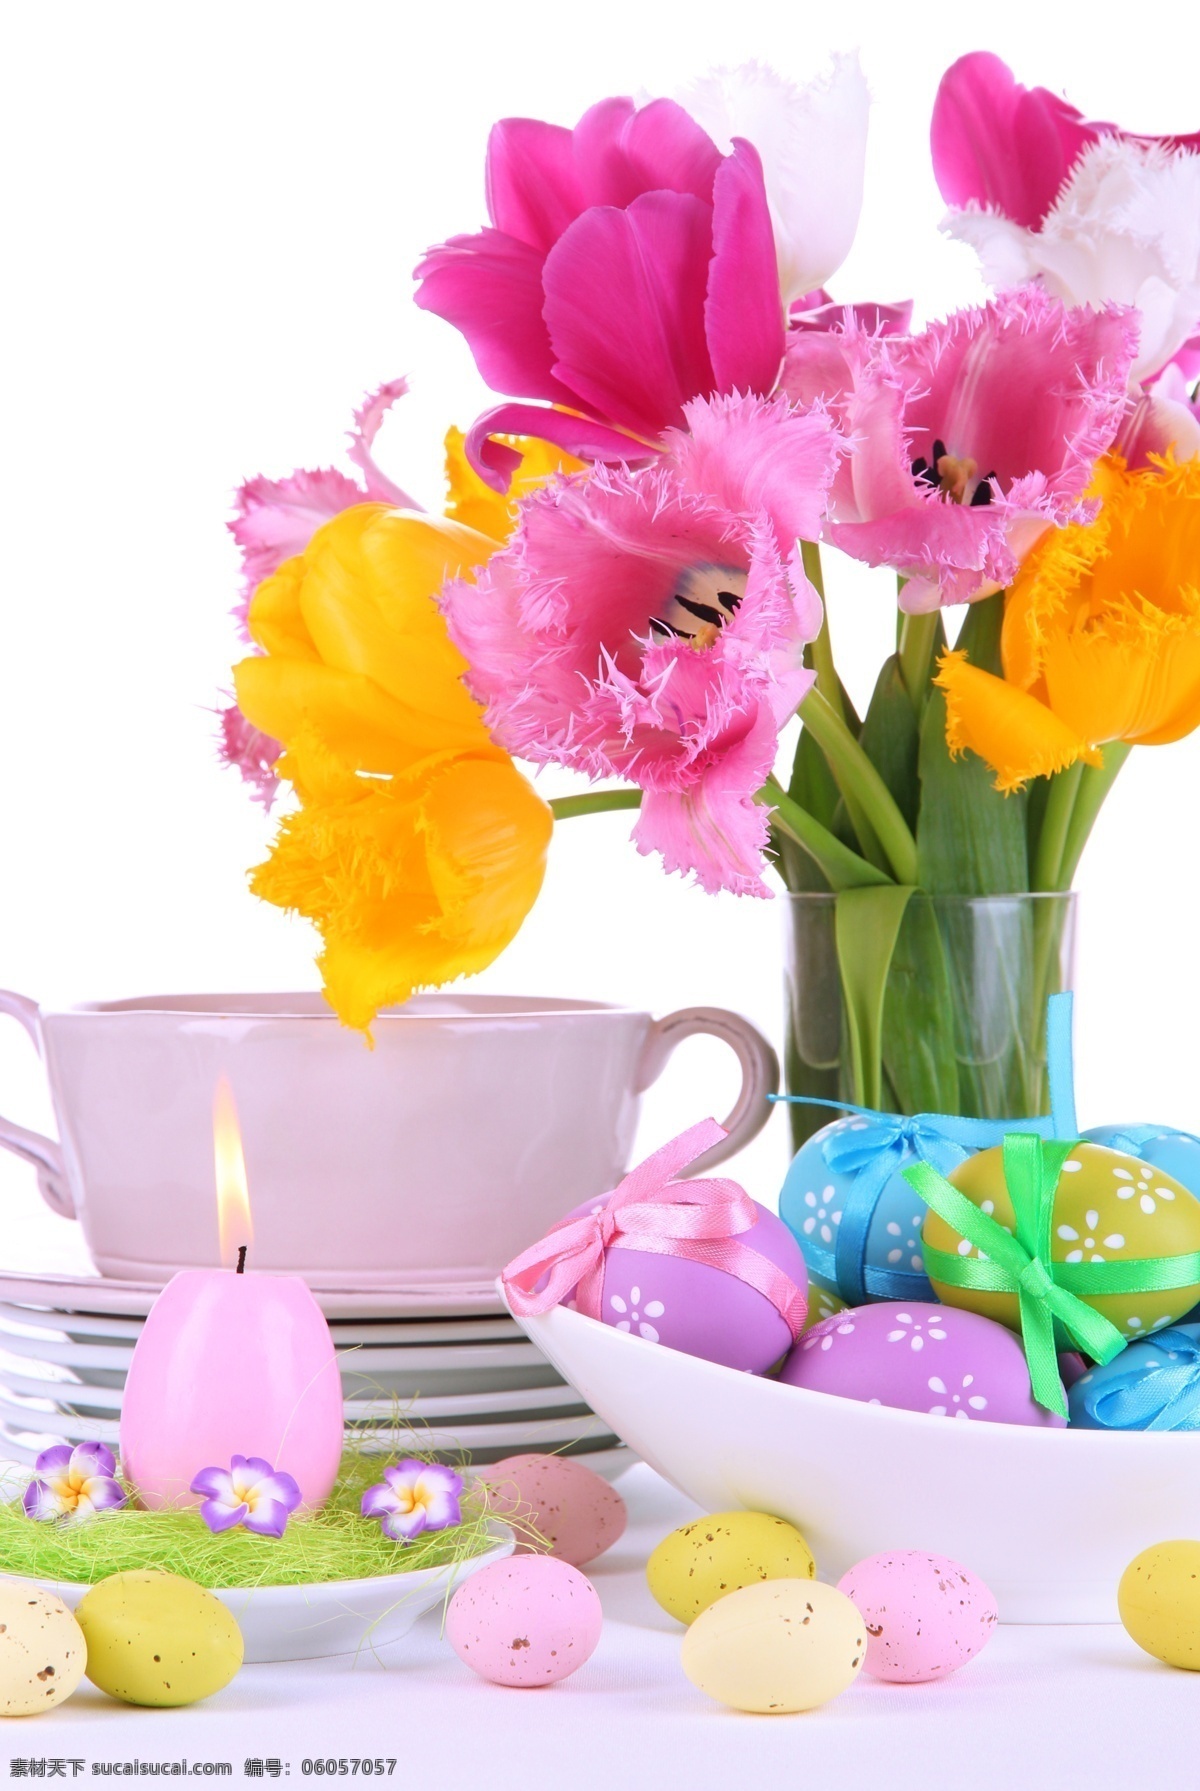 鲜花 彩蛋 复活节 复活节礼物 蜡烛 盘子 陶瓷杯 花朵 花卉 花草树木 生物世界